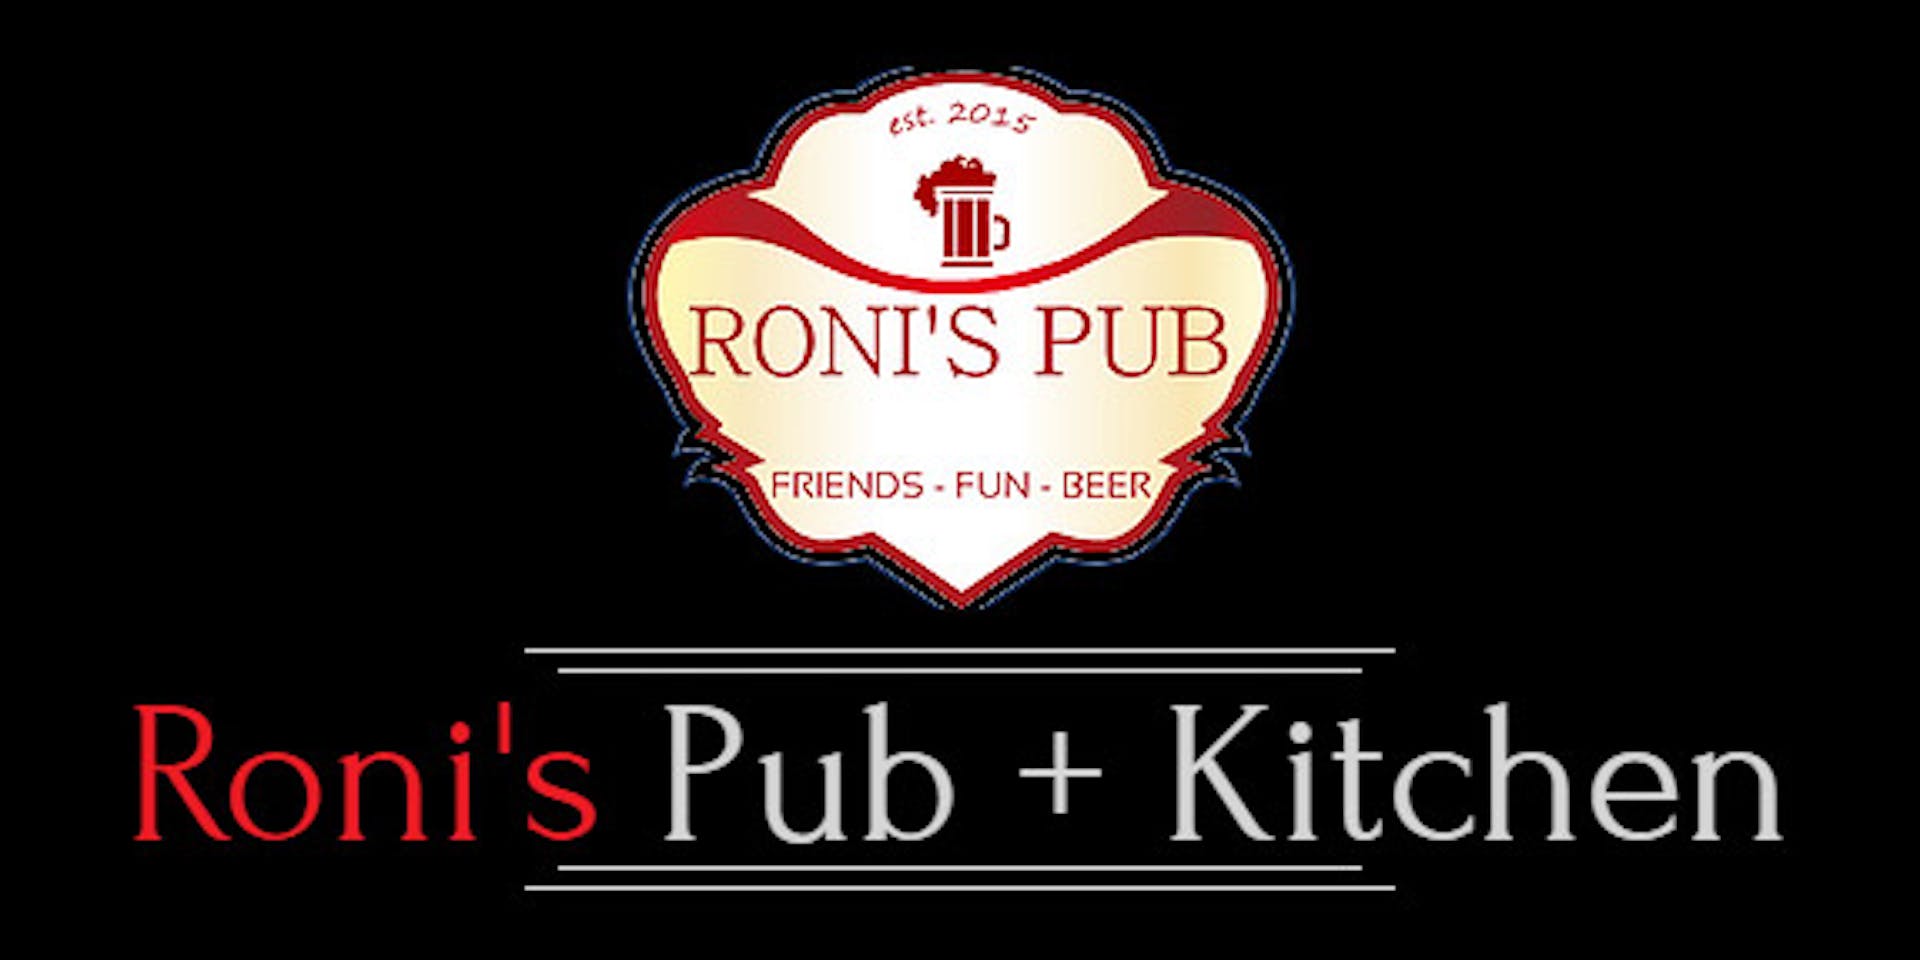 Roni's Pub + Kitchen